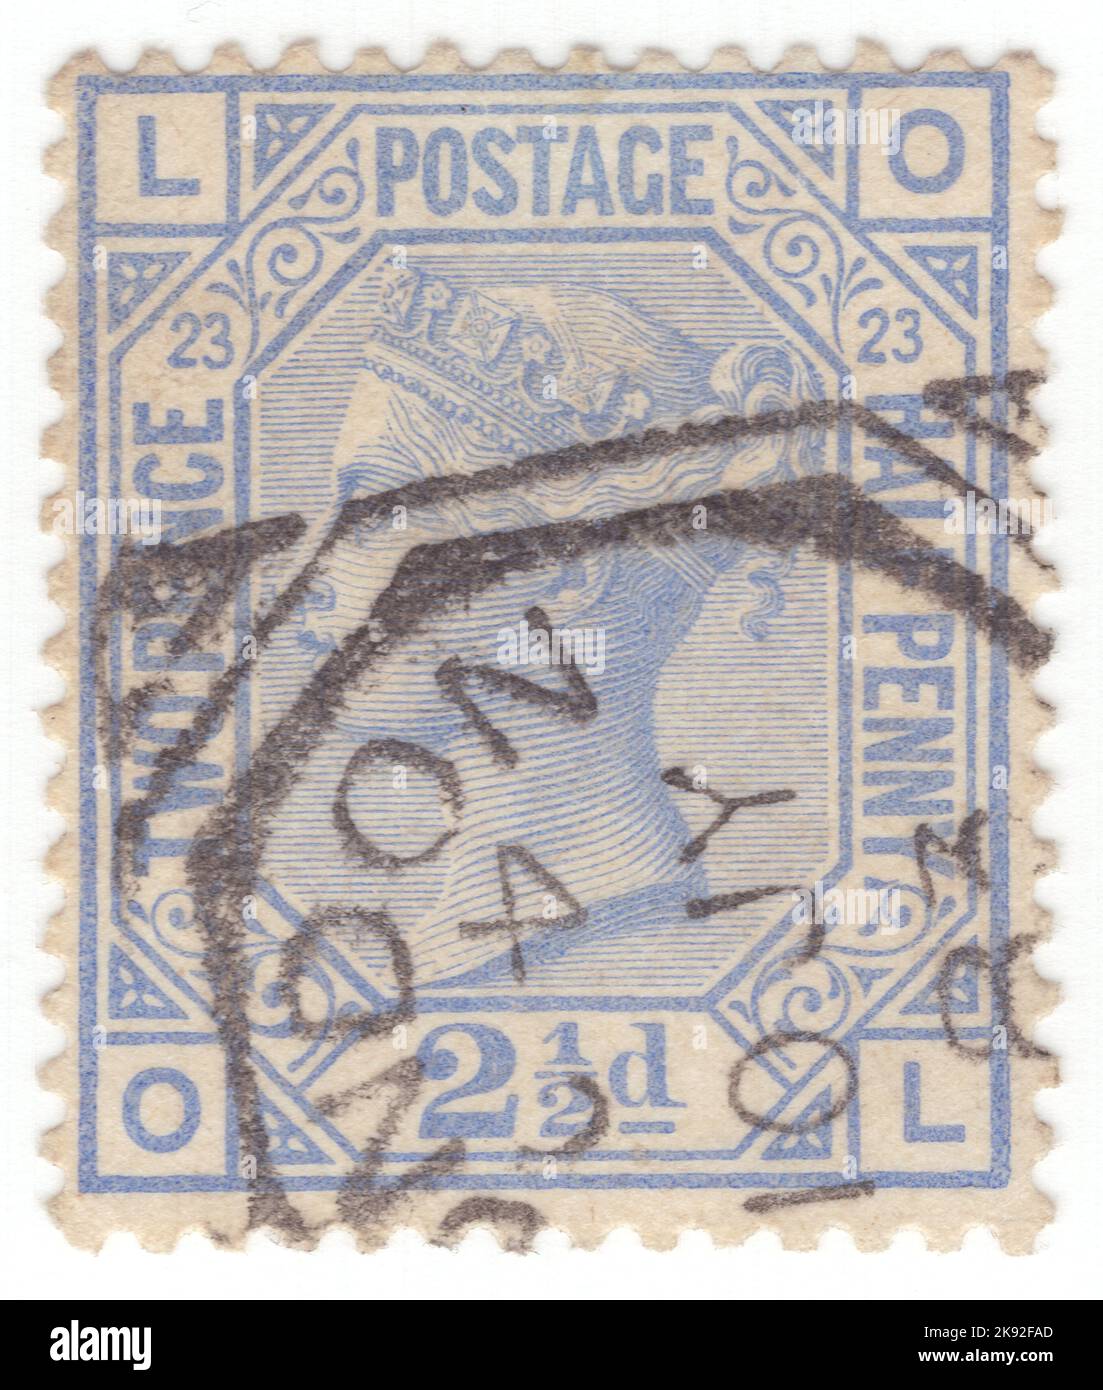 VEREINIGTES KÖNIGREICH - 1881: Eine ultramarine Briefmarke von 2½ Pence, die das Porträt von Königin Victoria zeigt. Platte 23 Stockfoto